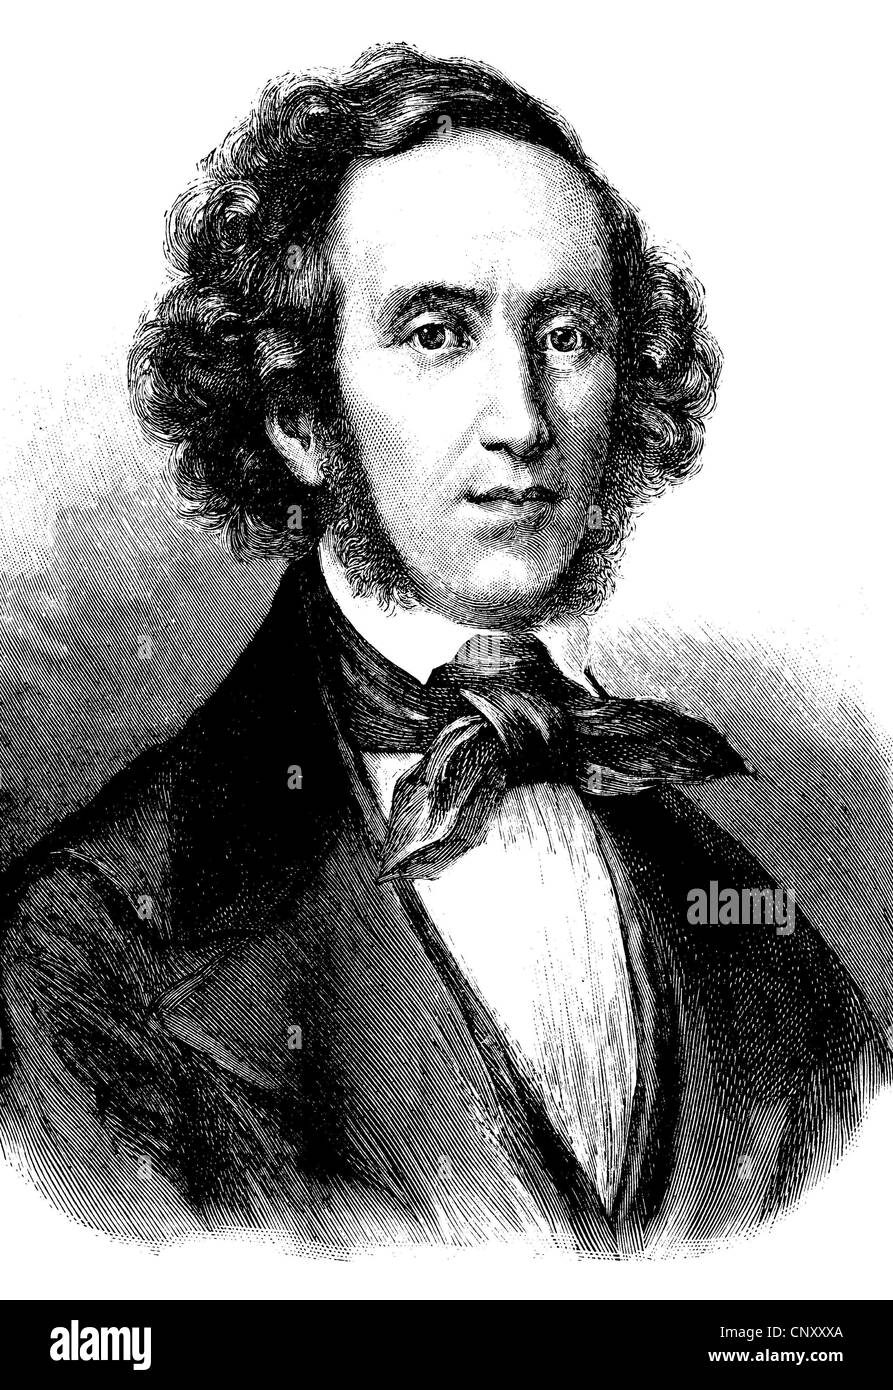 jakob ludwig felix mendelssohn bartholdy 1809 1847 deutscher komponist pianist und organist gilt er als eines der grea stockfotografie alamy